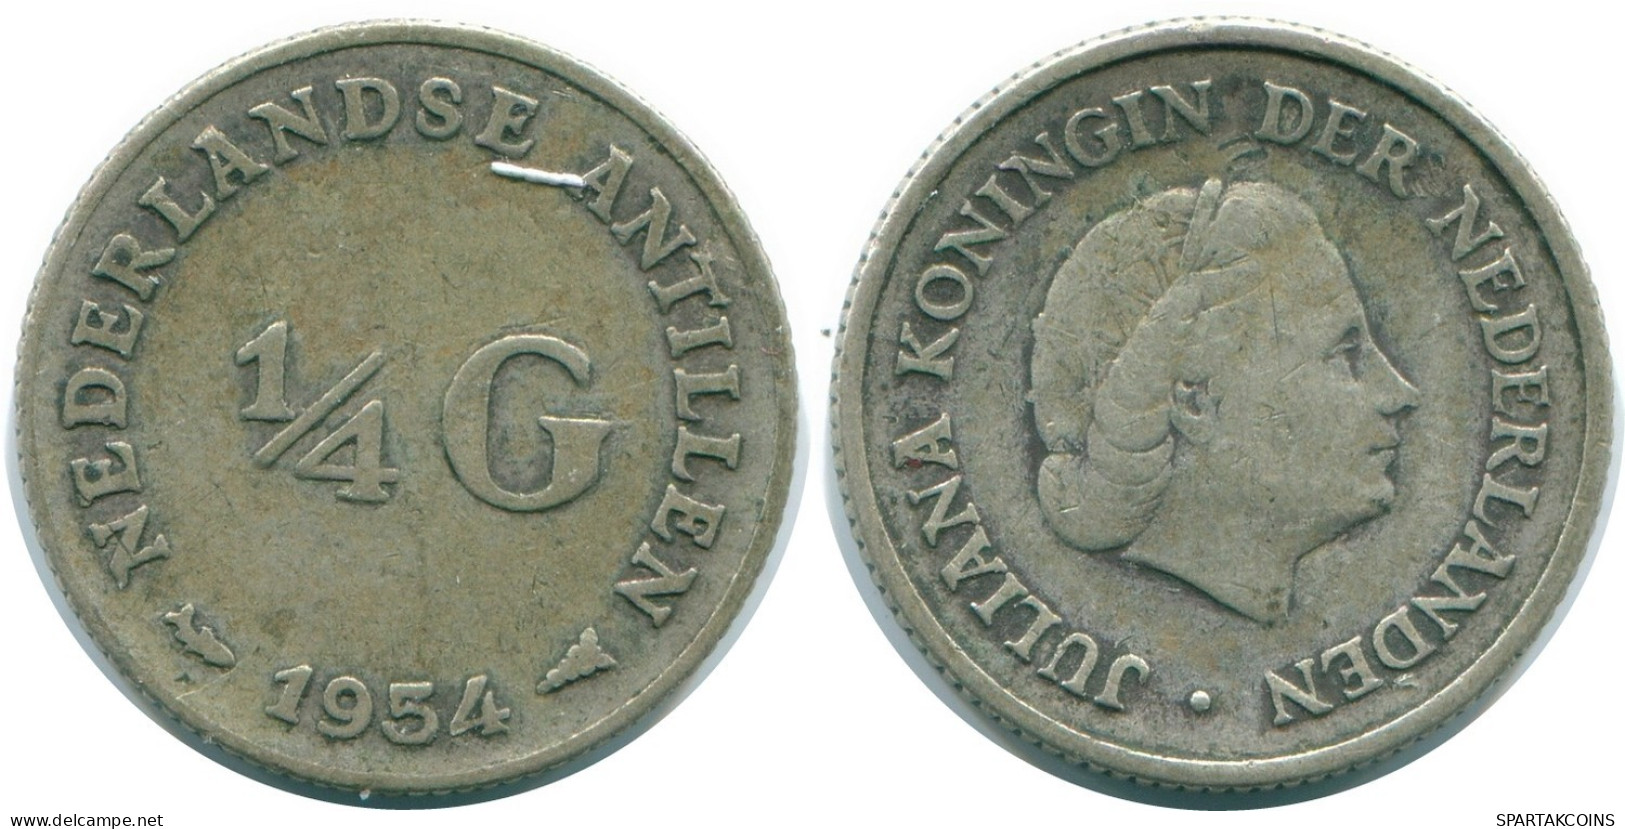 1/4 GULDEN 1954 NIEDERLÄNDISCHE ANTILLEN SILBER Koloniale Münze #NL10878.4.D.A - Antilles Néerlandaises